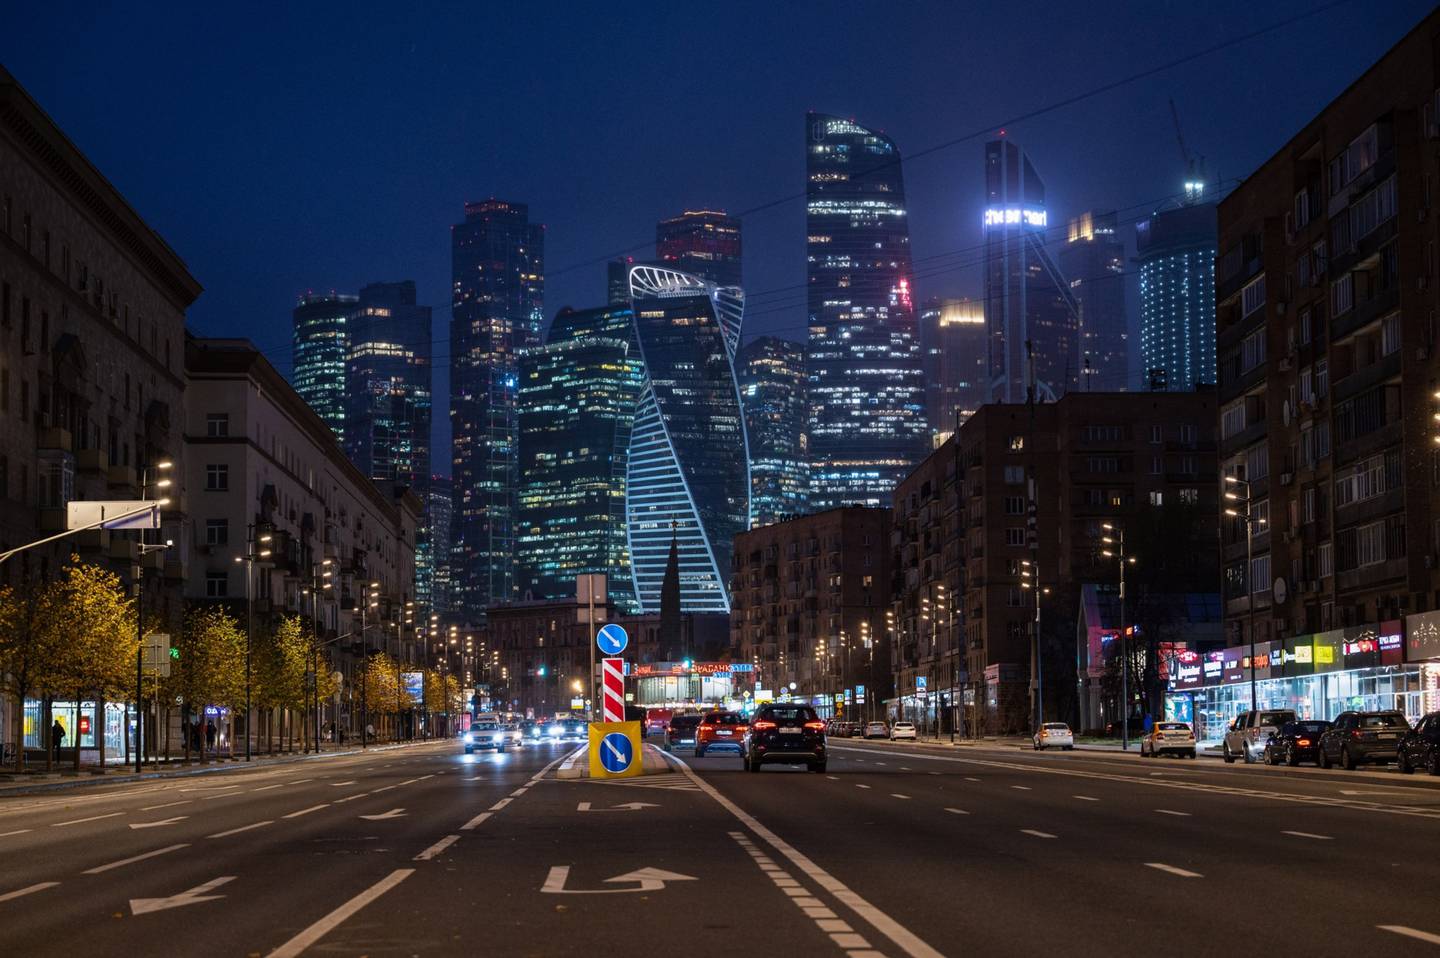 Edificios de rascacielos iluminados por la noche en el Centro Internacional de Negocios de Moscú (MIBC), también conocido como Ciudad de Moscú, distrito de Moscú, Rusia, el jueves 21 de octubre de 2021.